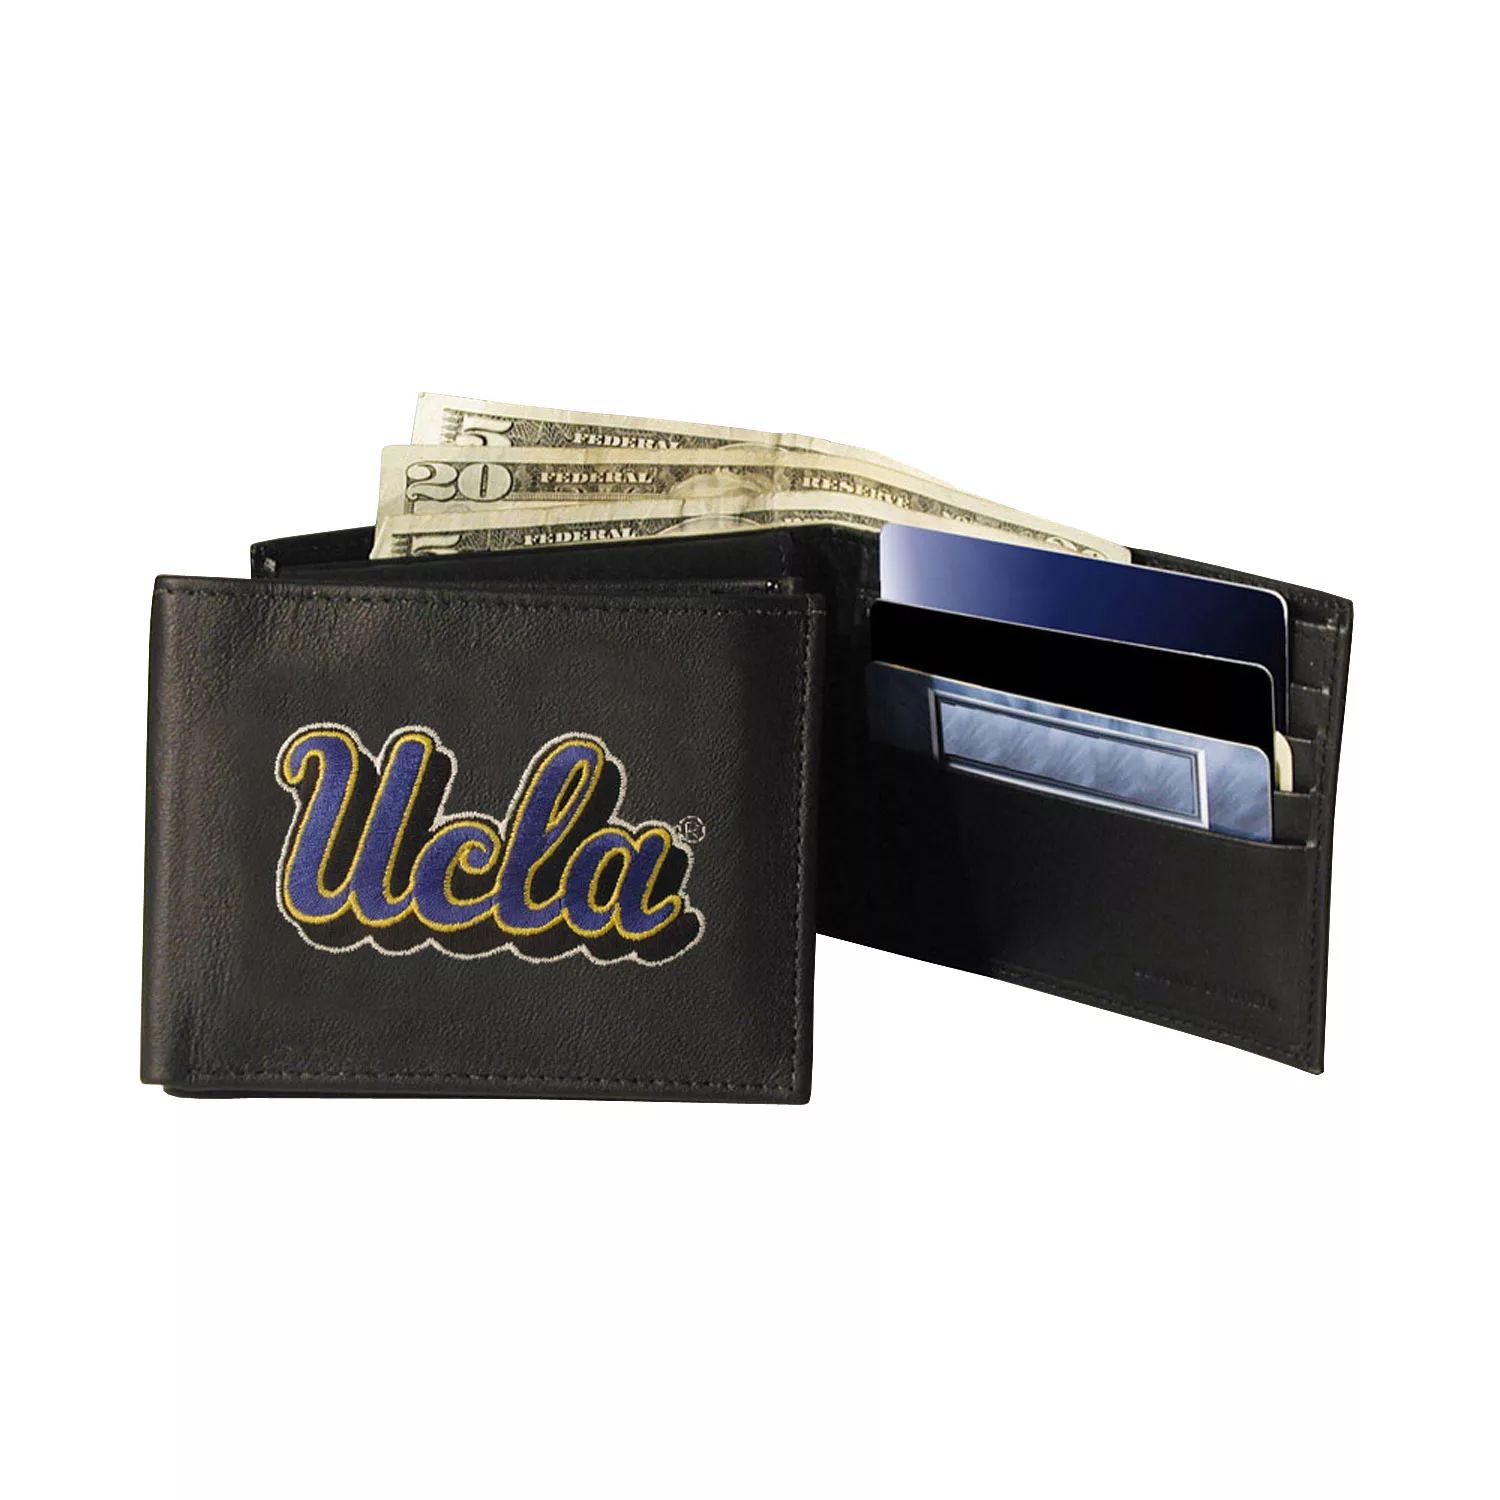 Кожаный кошелек UCLA Bruins двойного сложения фото